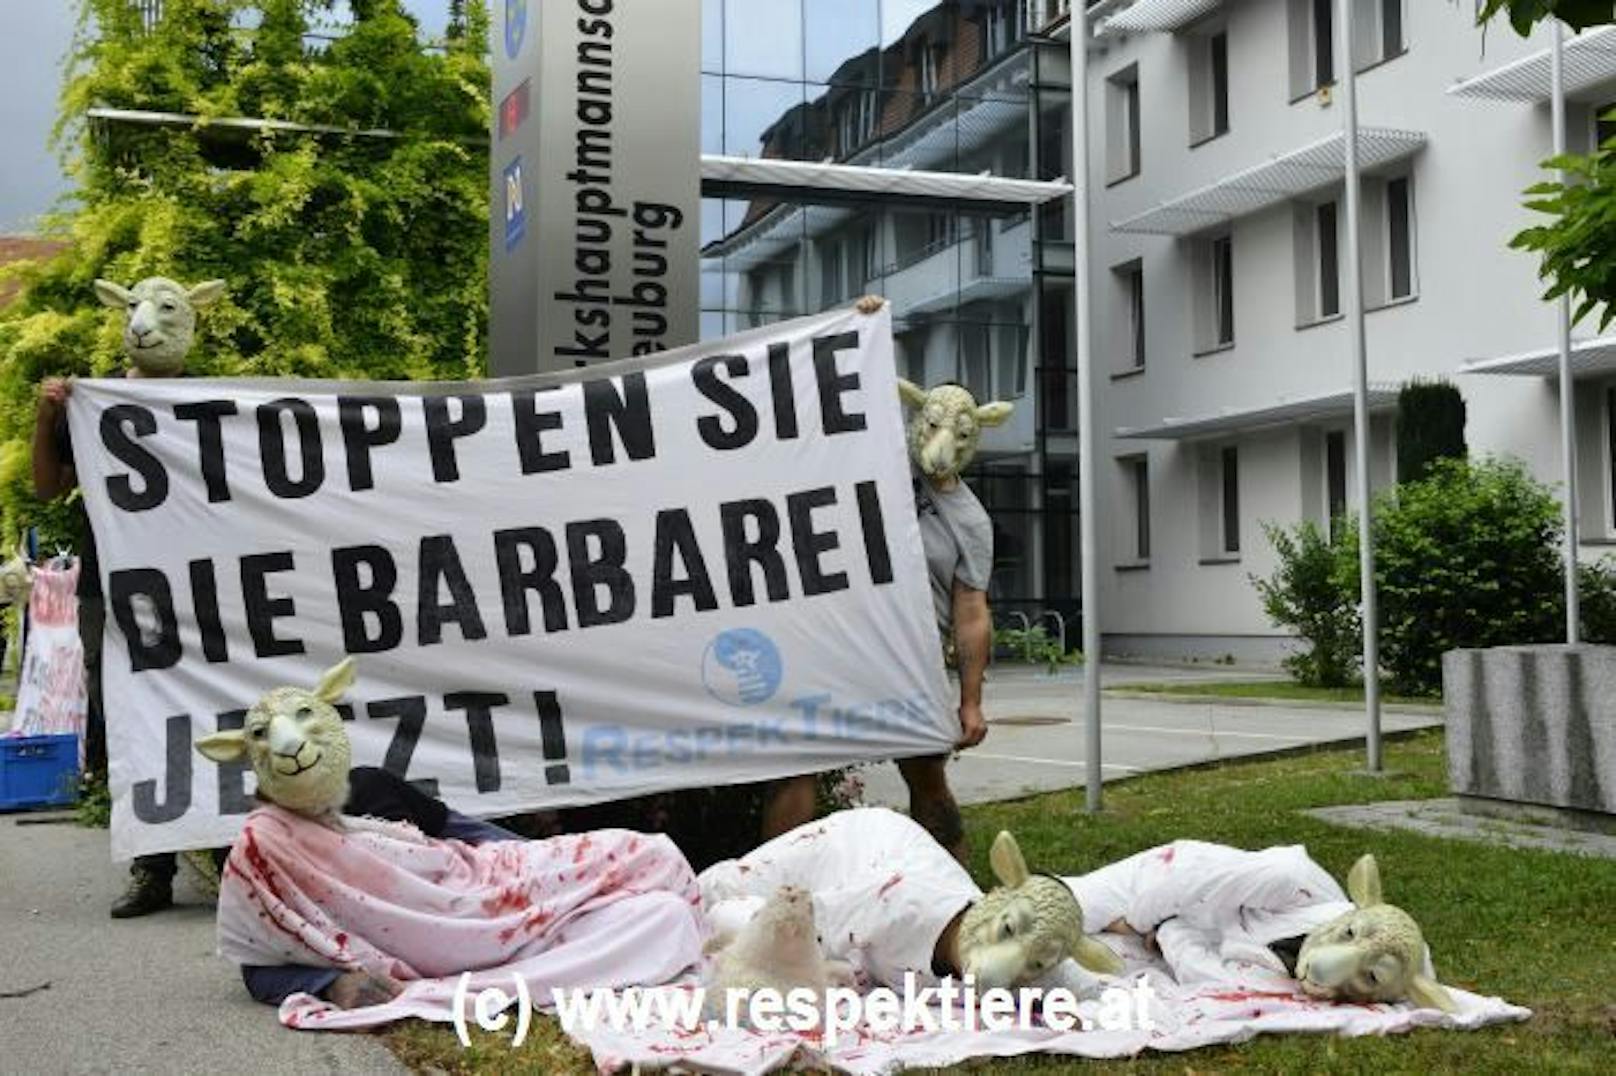 Verein protestiert gegen Schächten in NÖ.